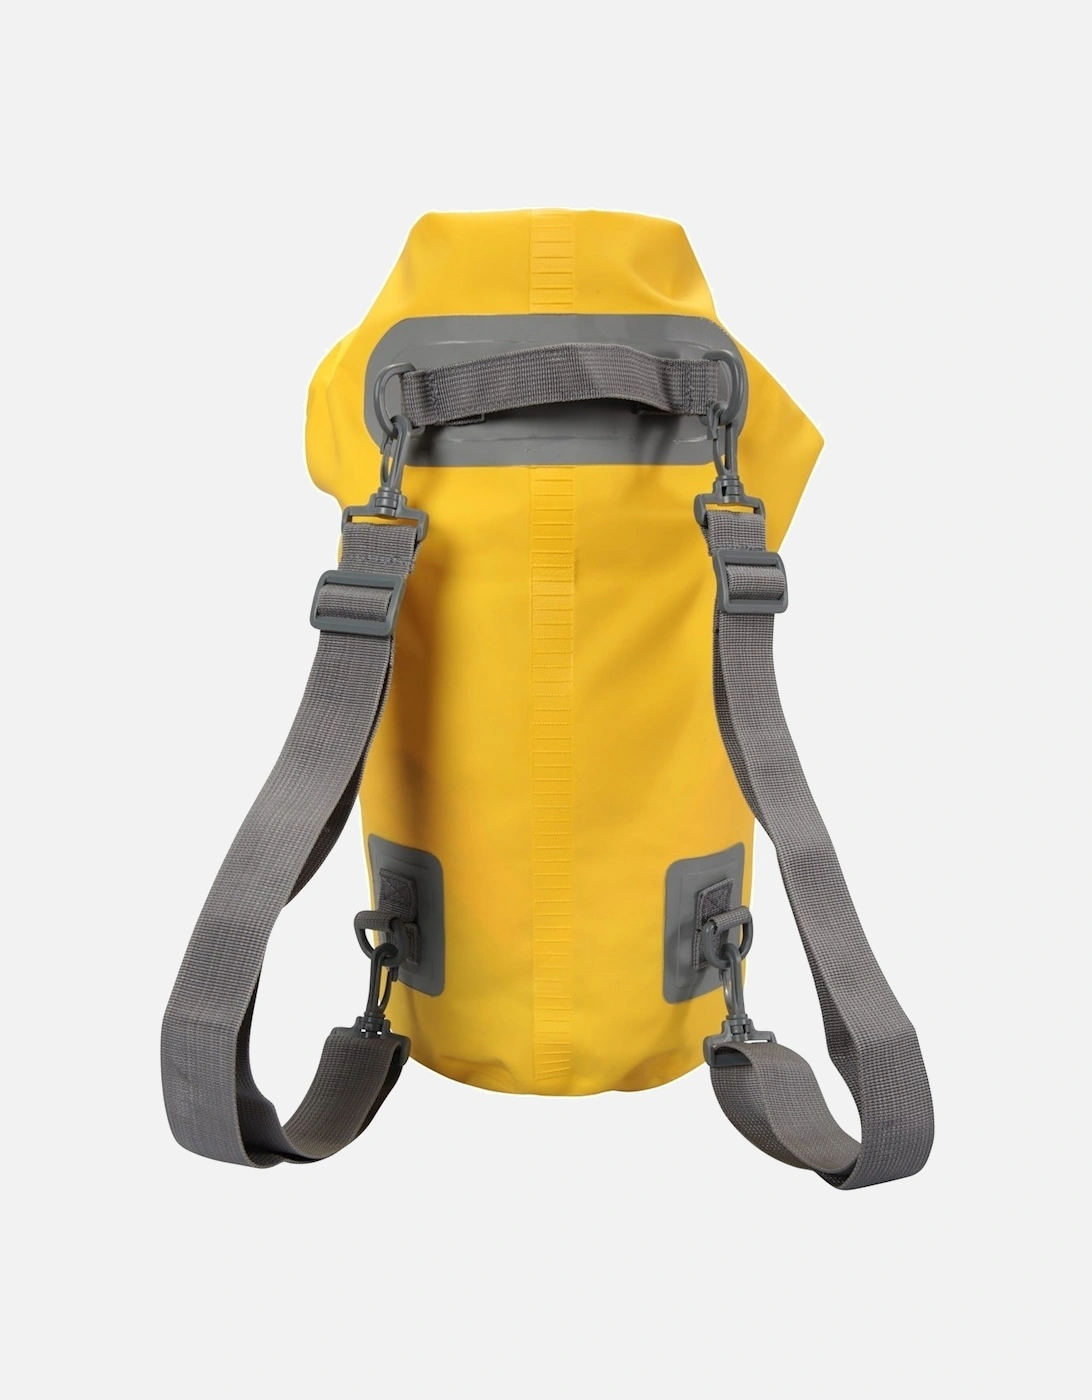 Waterproof 10L Dry Bag